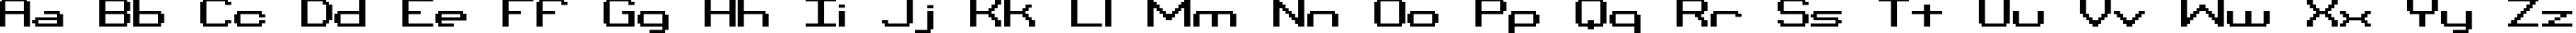 Пример написания английского алфавита шрифтом Binary X CHR BRK